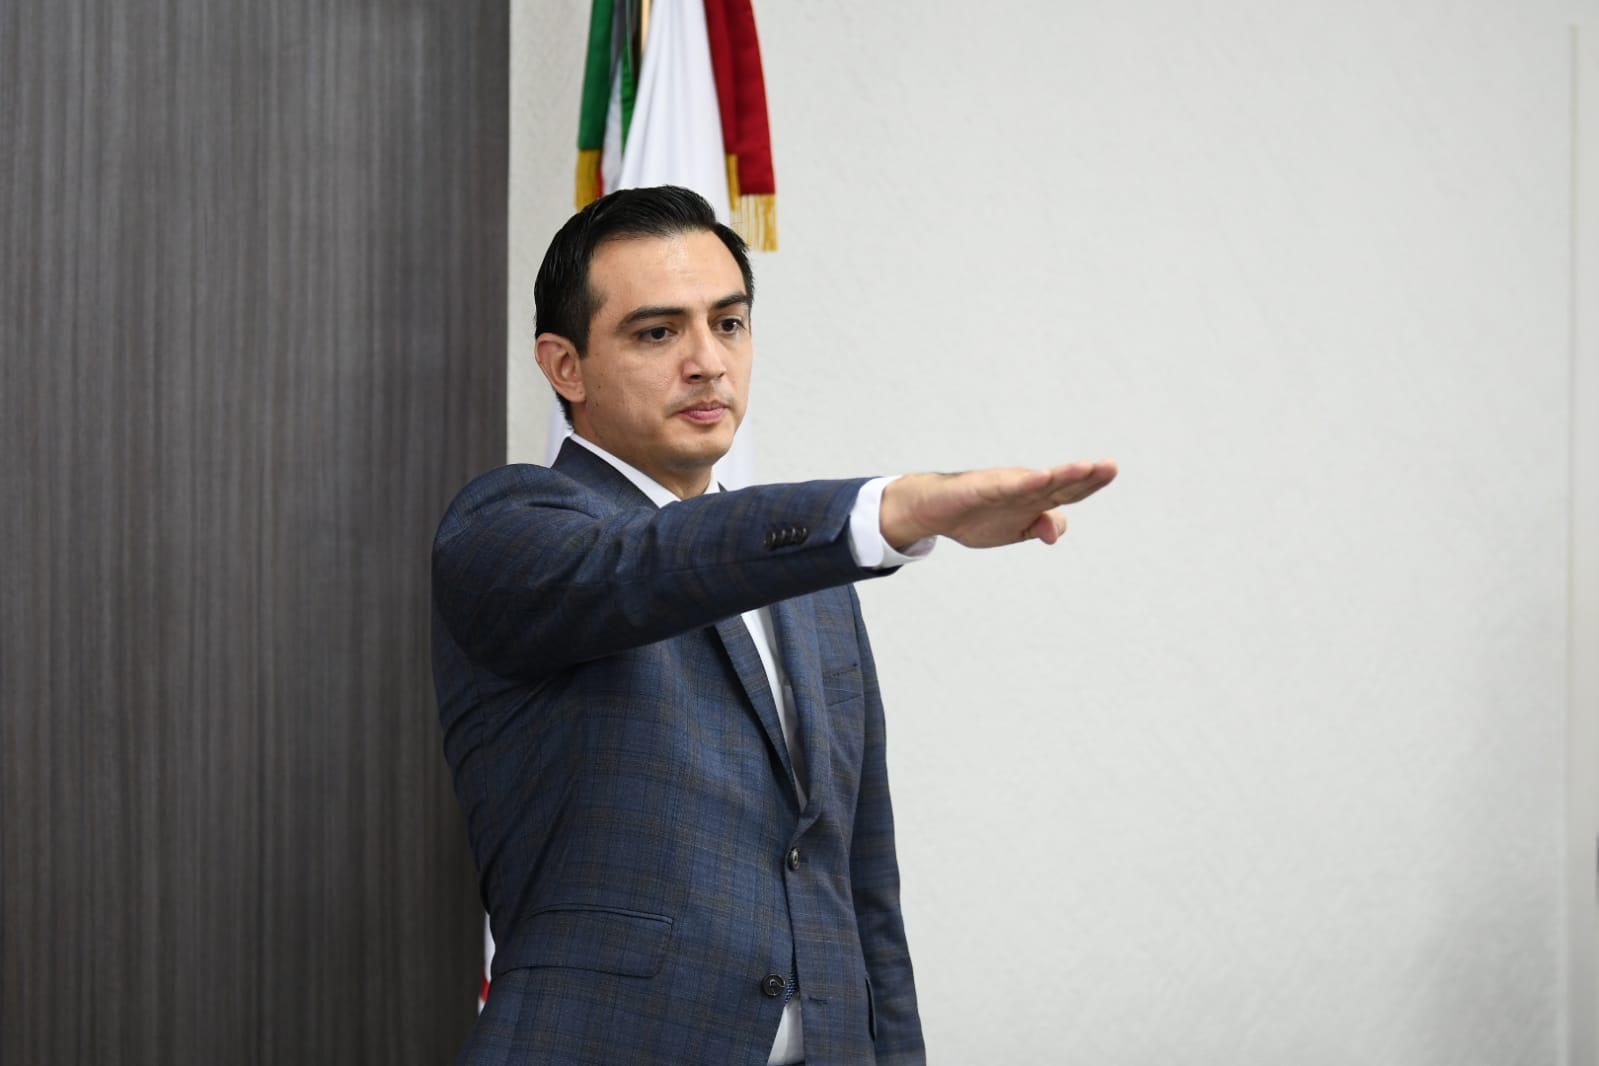 Fernando García Ramos toma protesta como Consejero Electoral del OPLE Veracruz por un periodo de 7 años